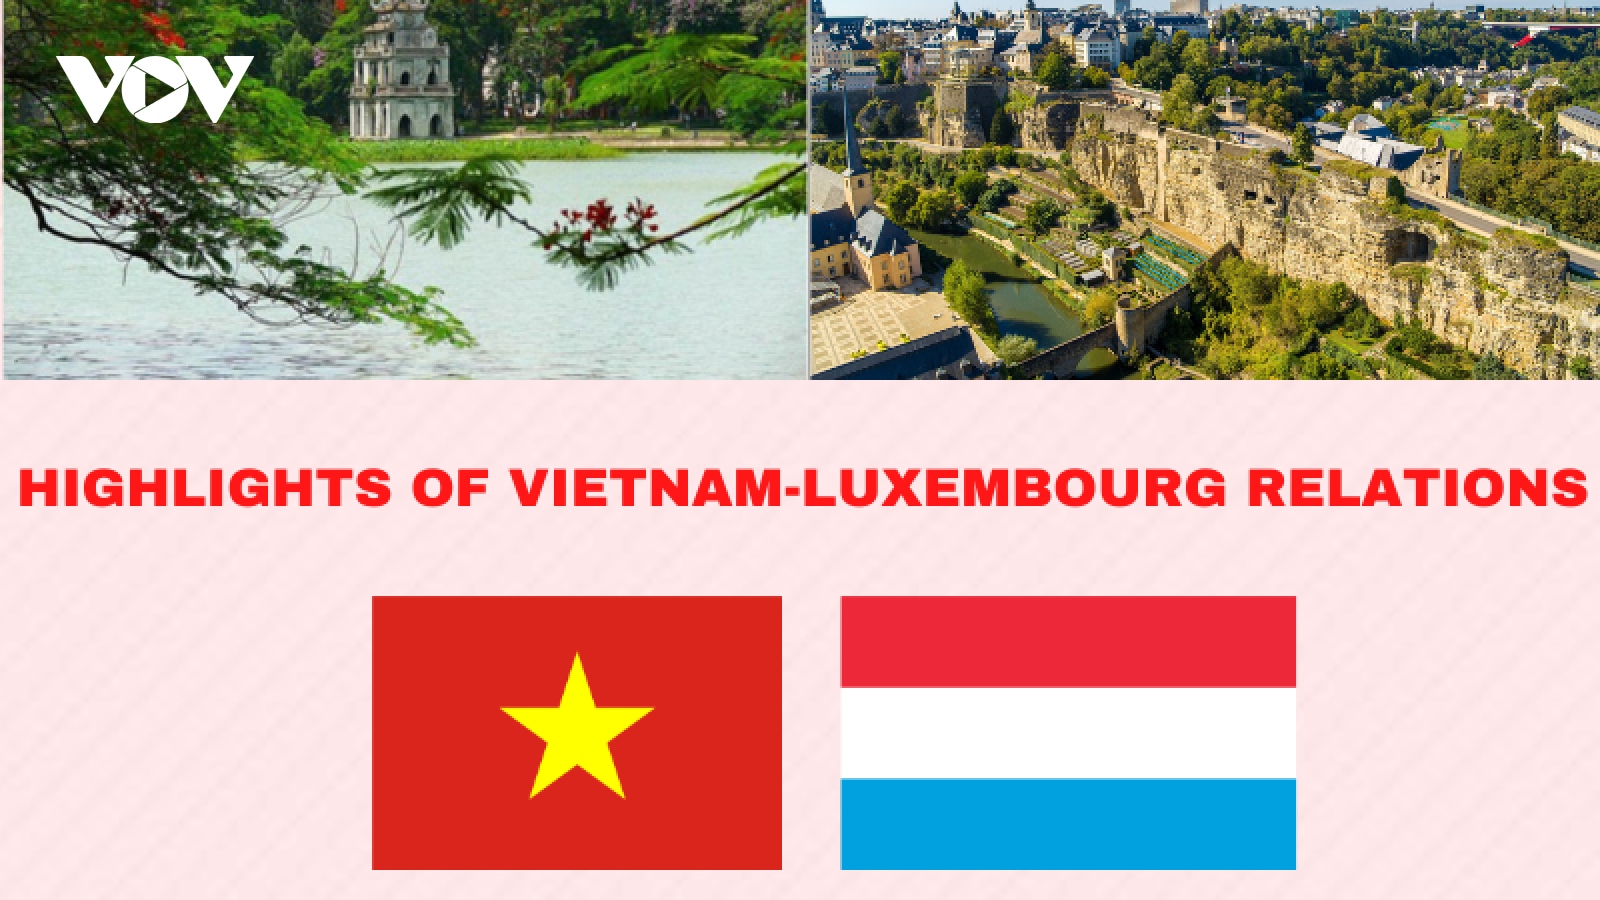 Important milestones in Vietnam-Luxembourg relations